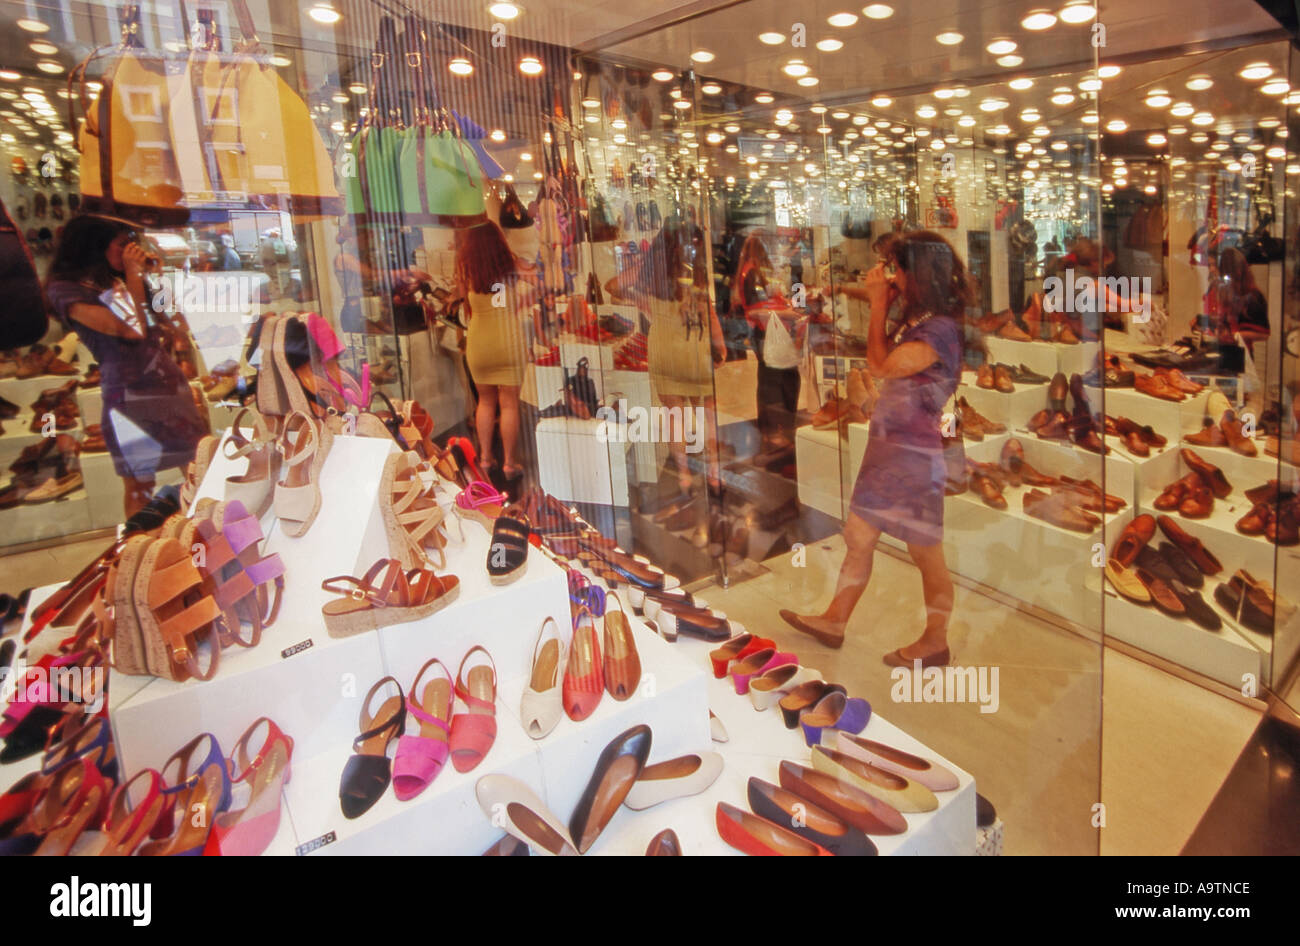 Shopping rome shoes immagini e fotografie stock ad alta risoluzione - Alamy